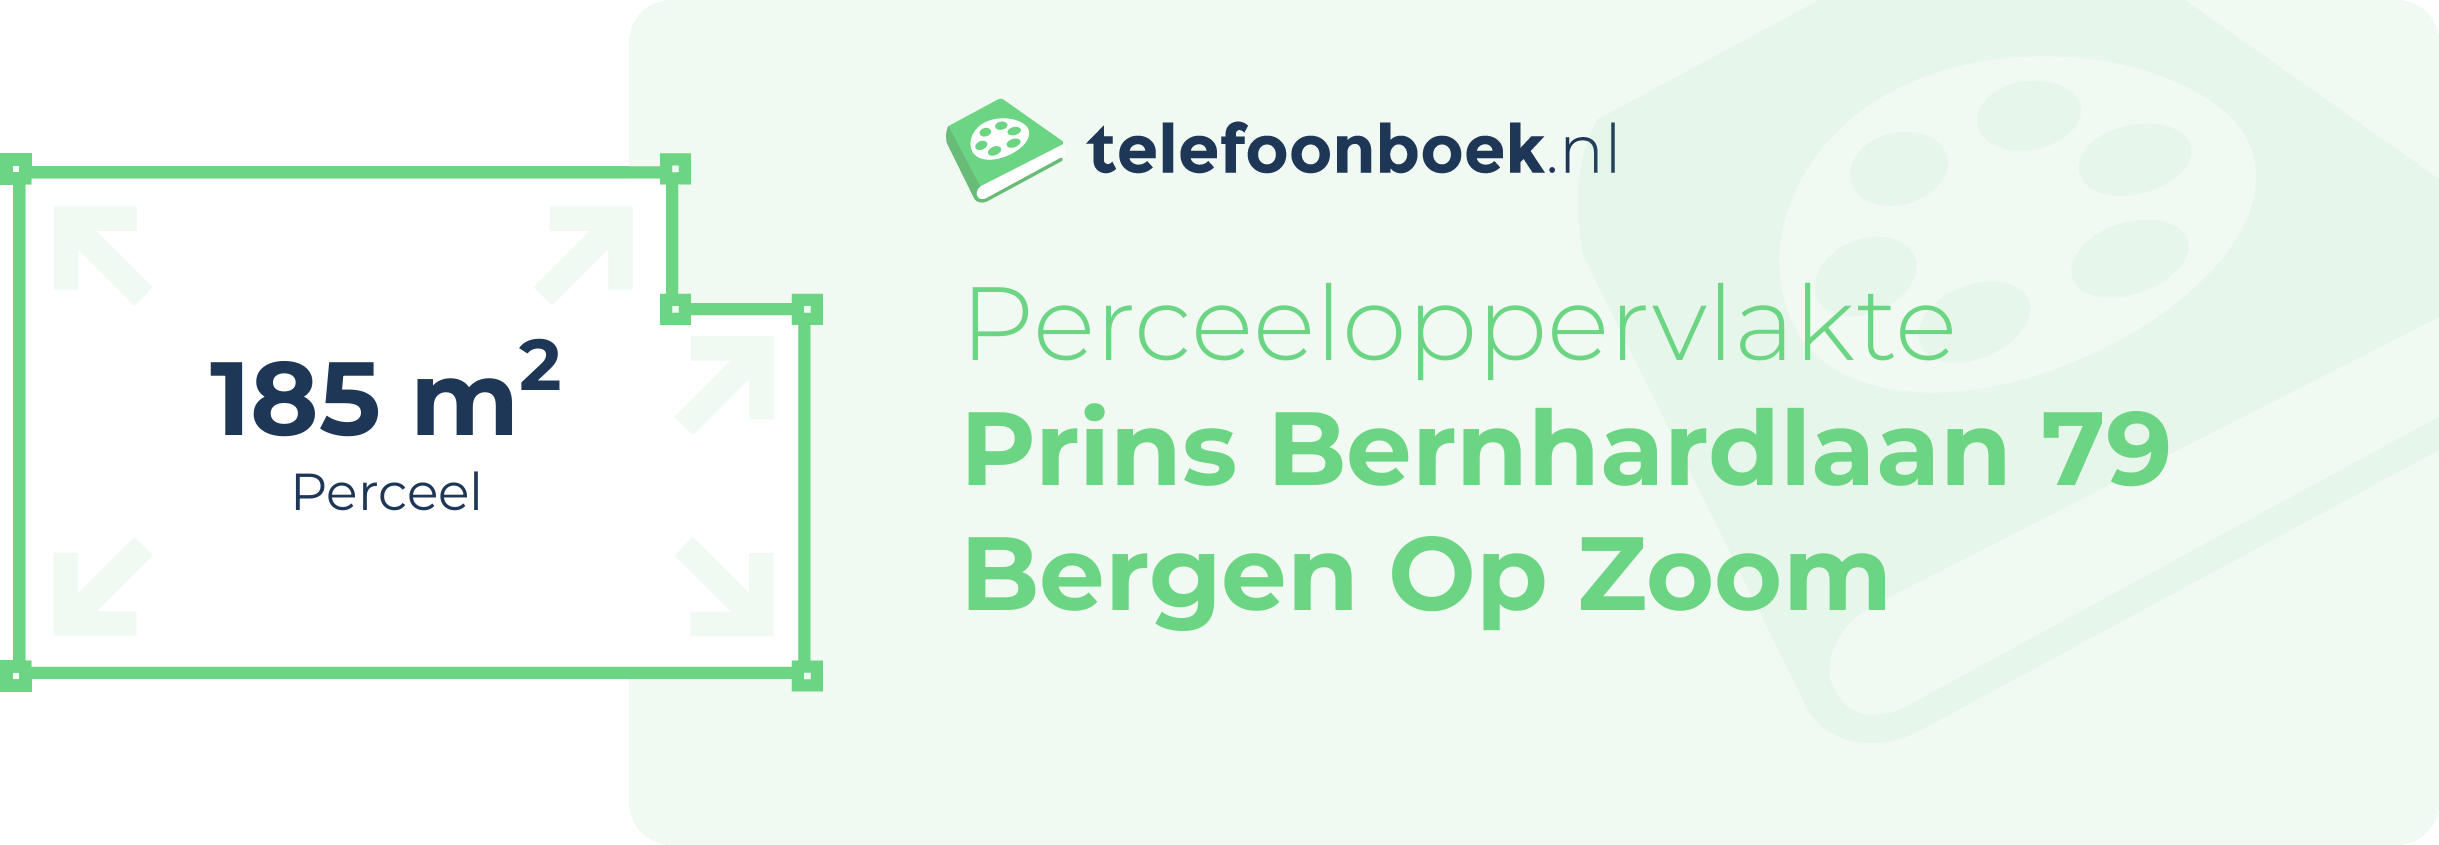 Perceeloppervlakte Prins Bernhardlaan 79 Bergen Op Zoom